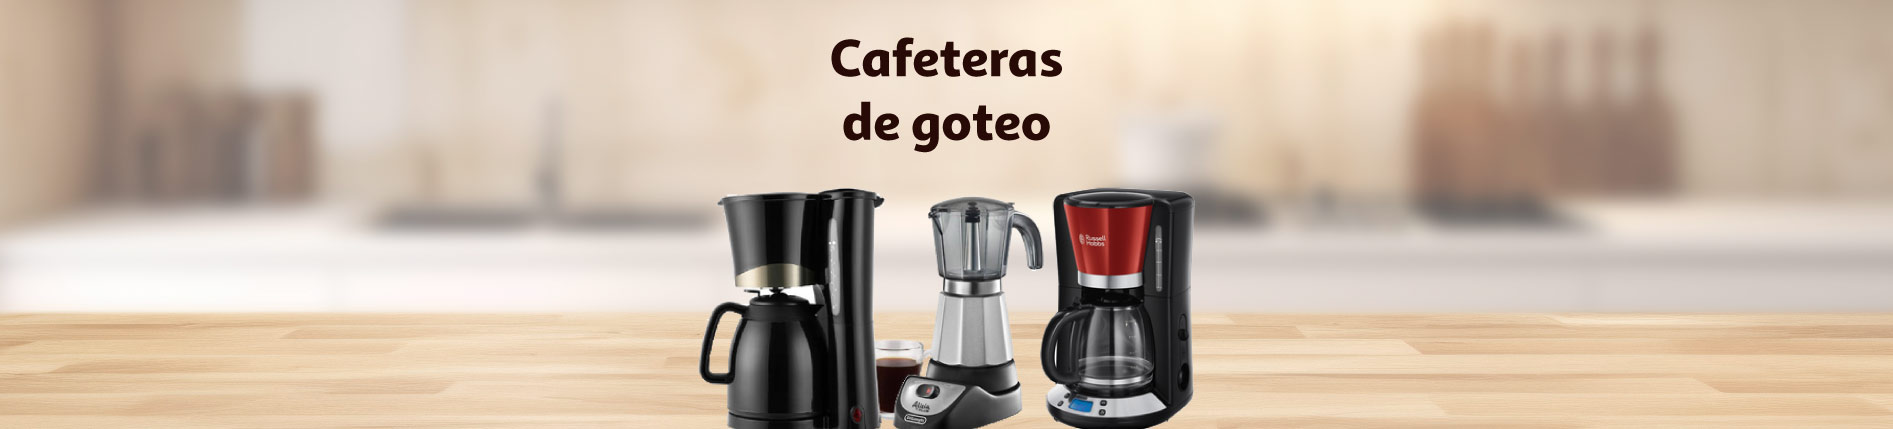 Cafeteras superautomáticas - Categorías - Alcampo supermercado online